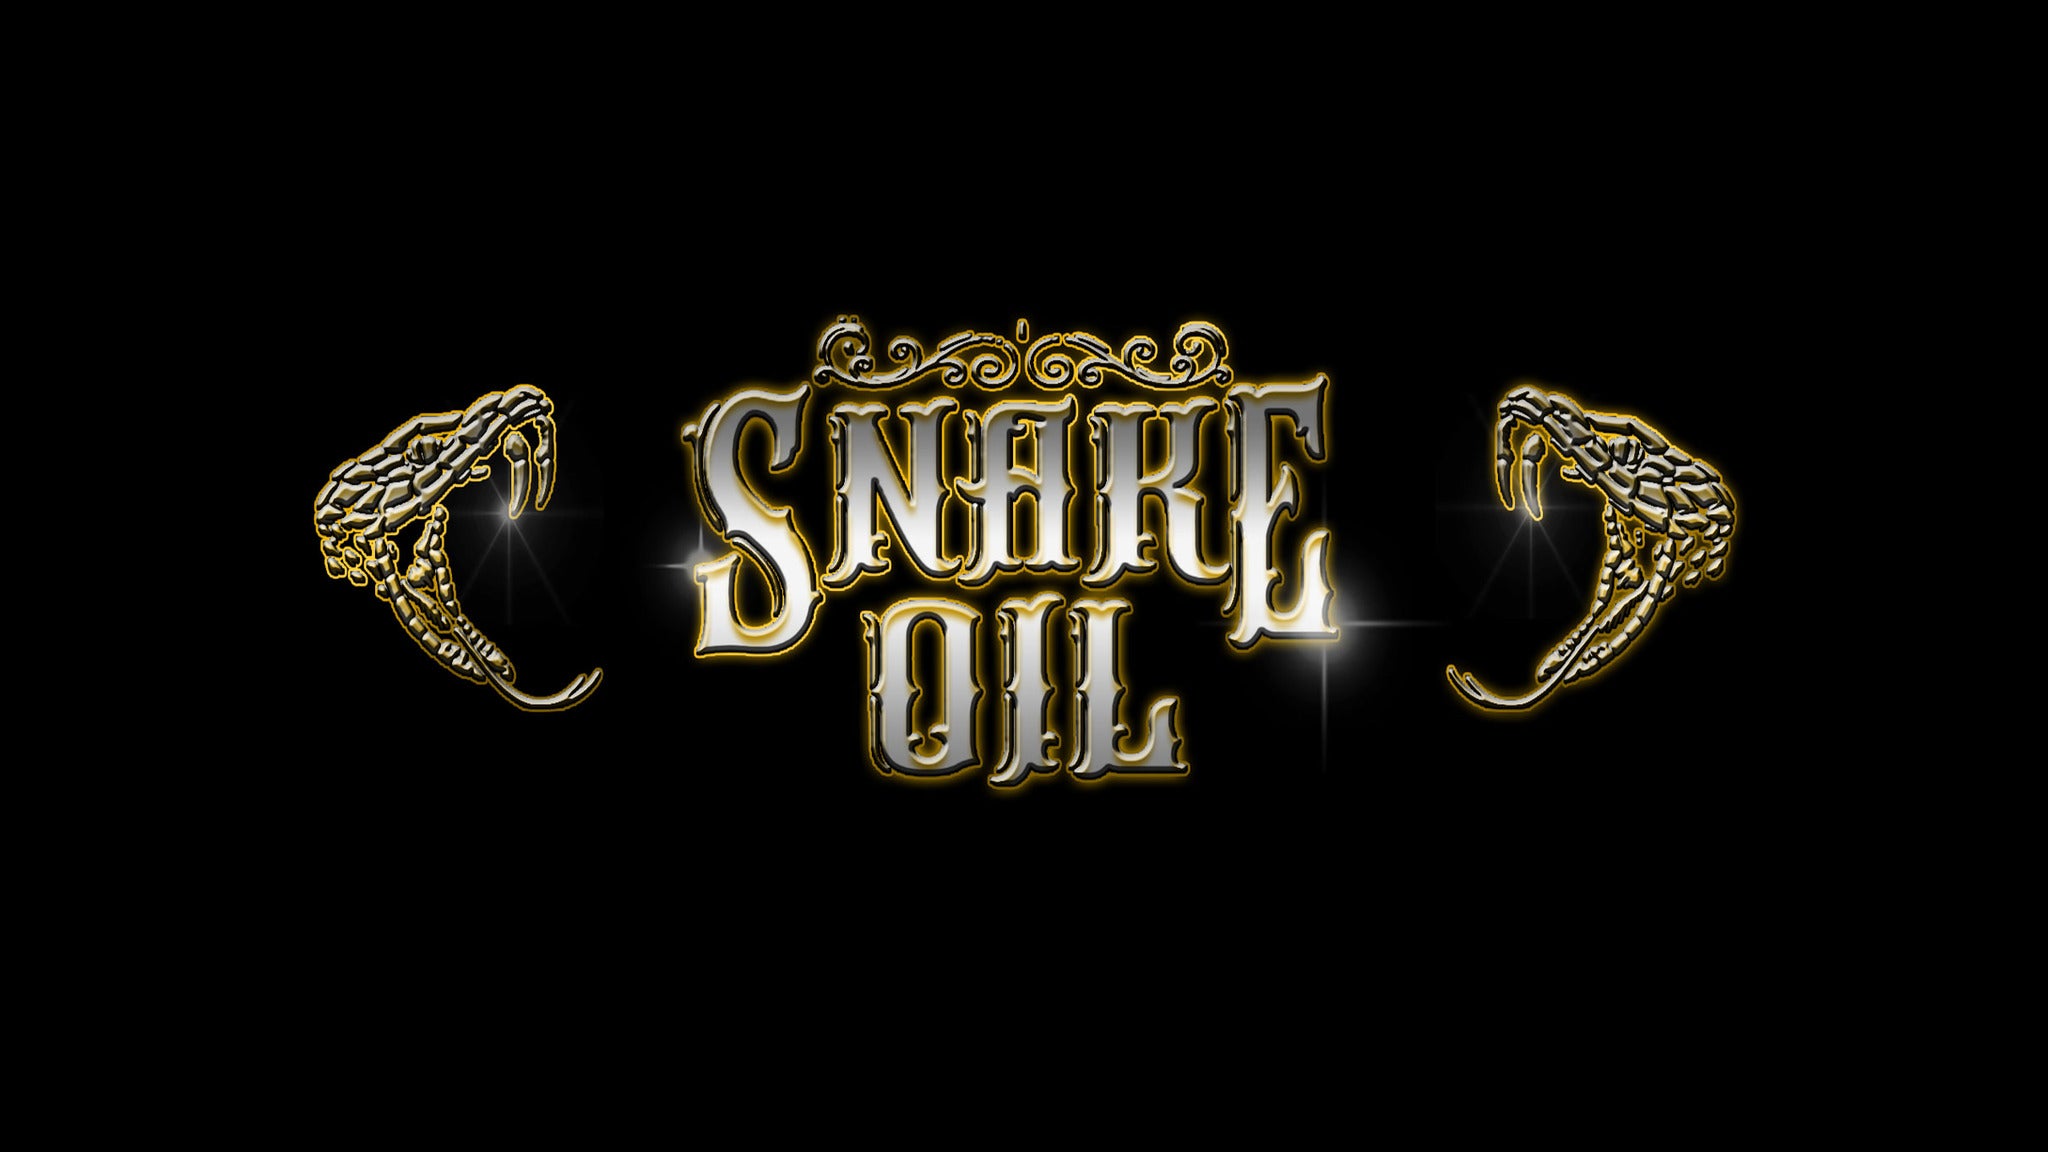 Snake Oil in Winnipeg promo photo for Artist presale offer code